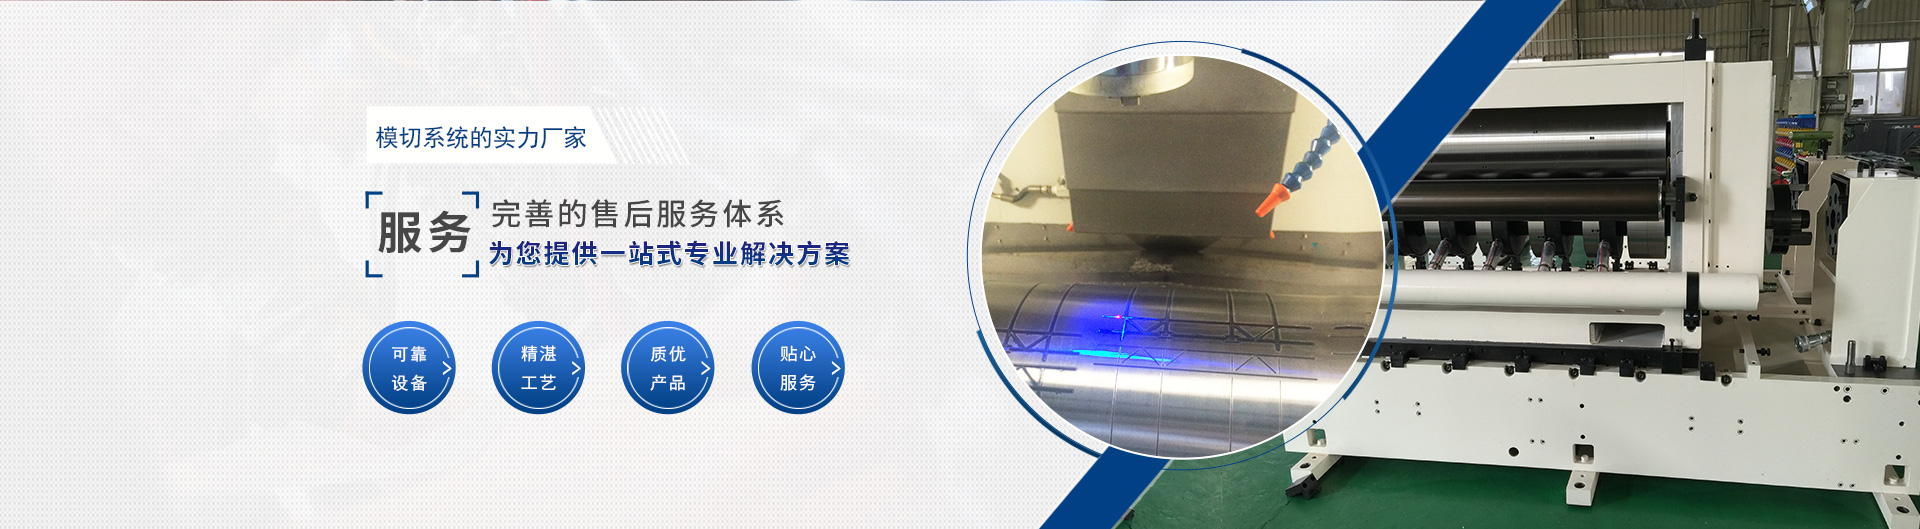 上海宗力印刷包裝機械有限公司